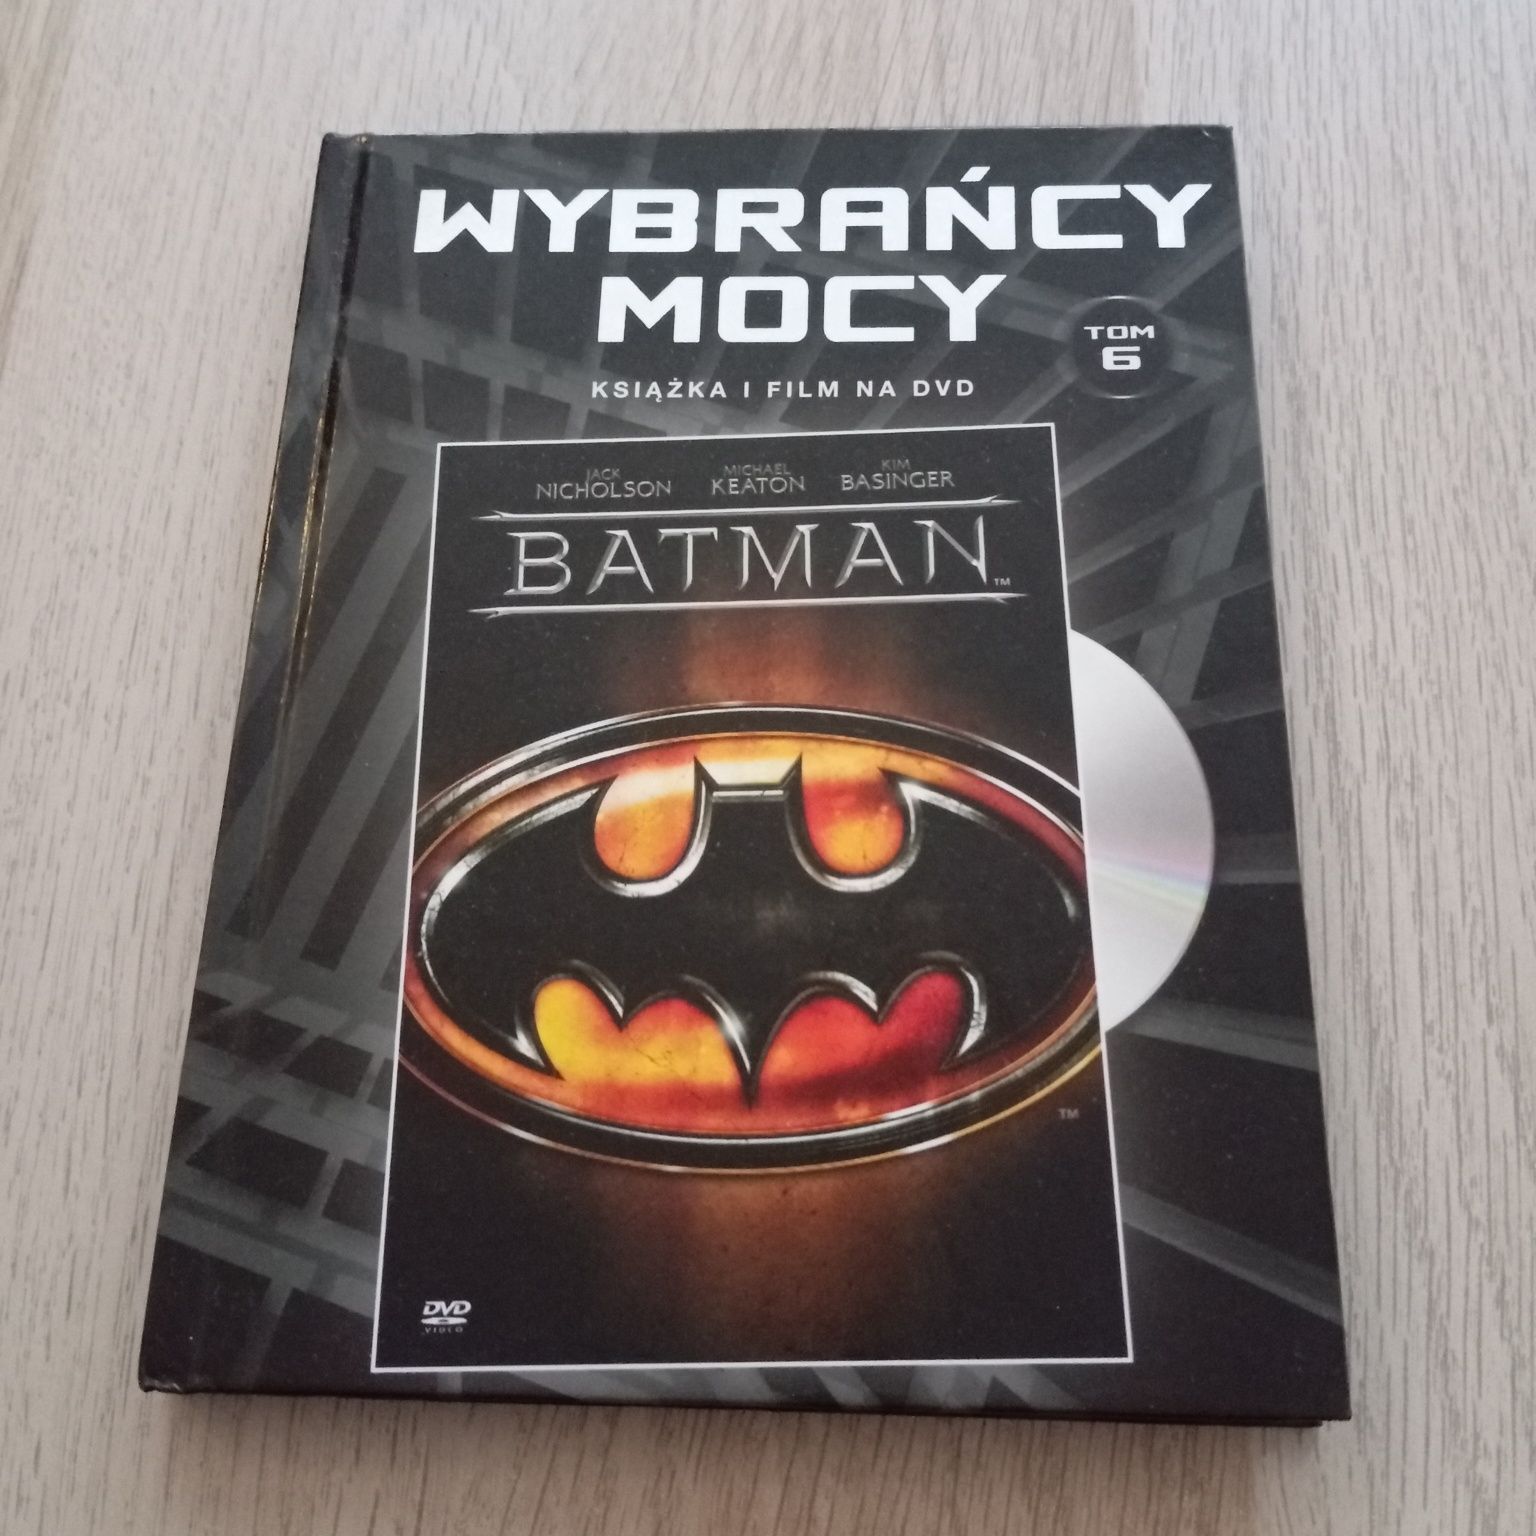 Batman, Wybrańcy Mocy, DVD